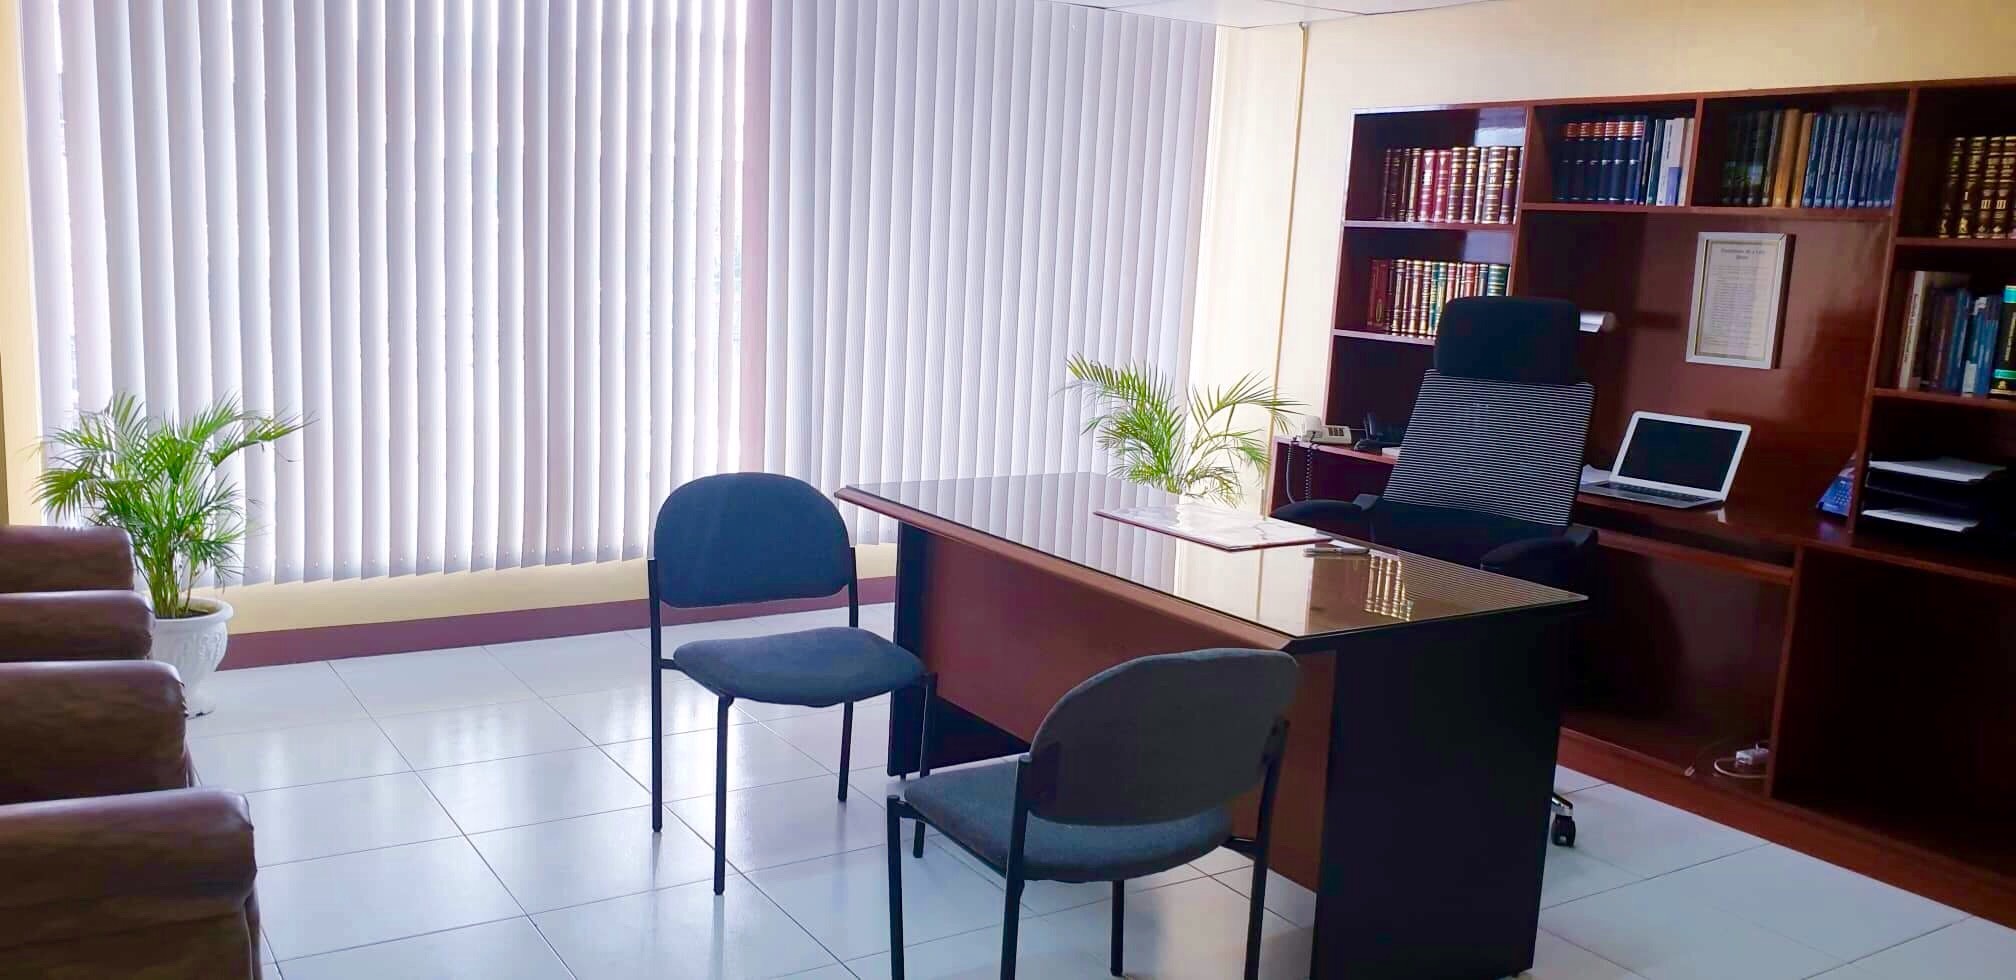 School of Law – Dean’s Office